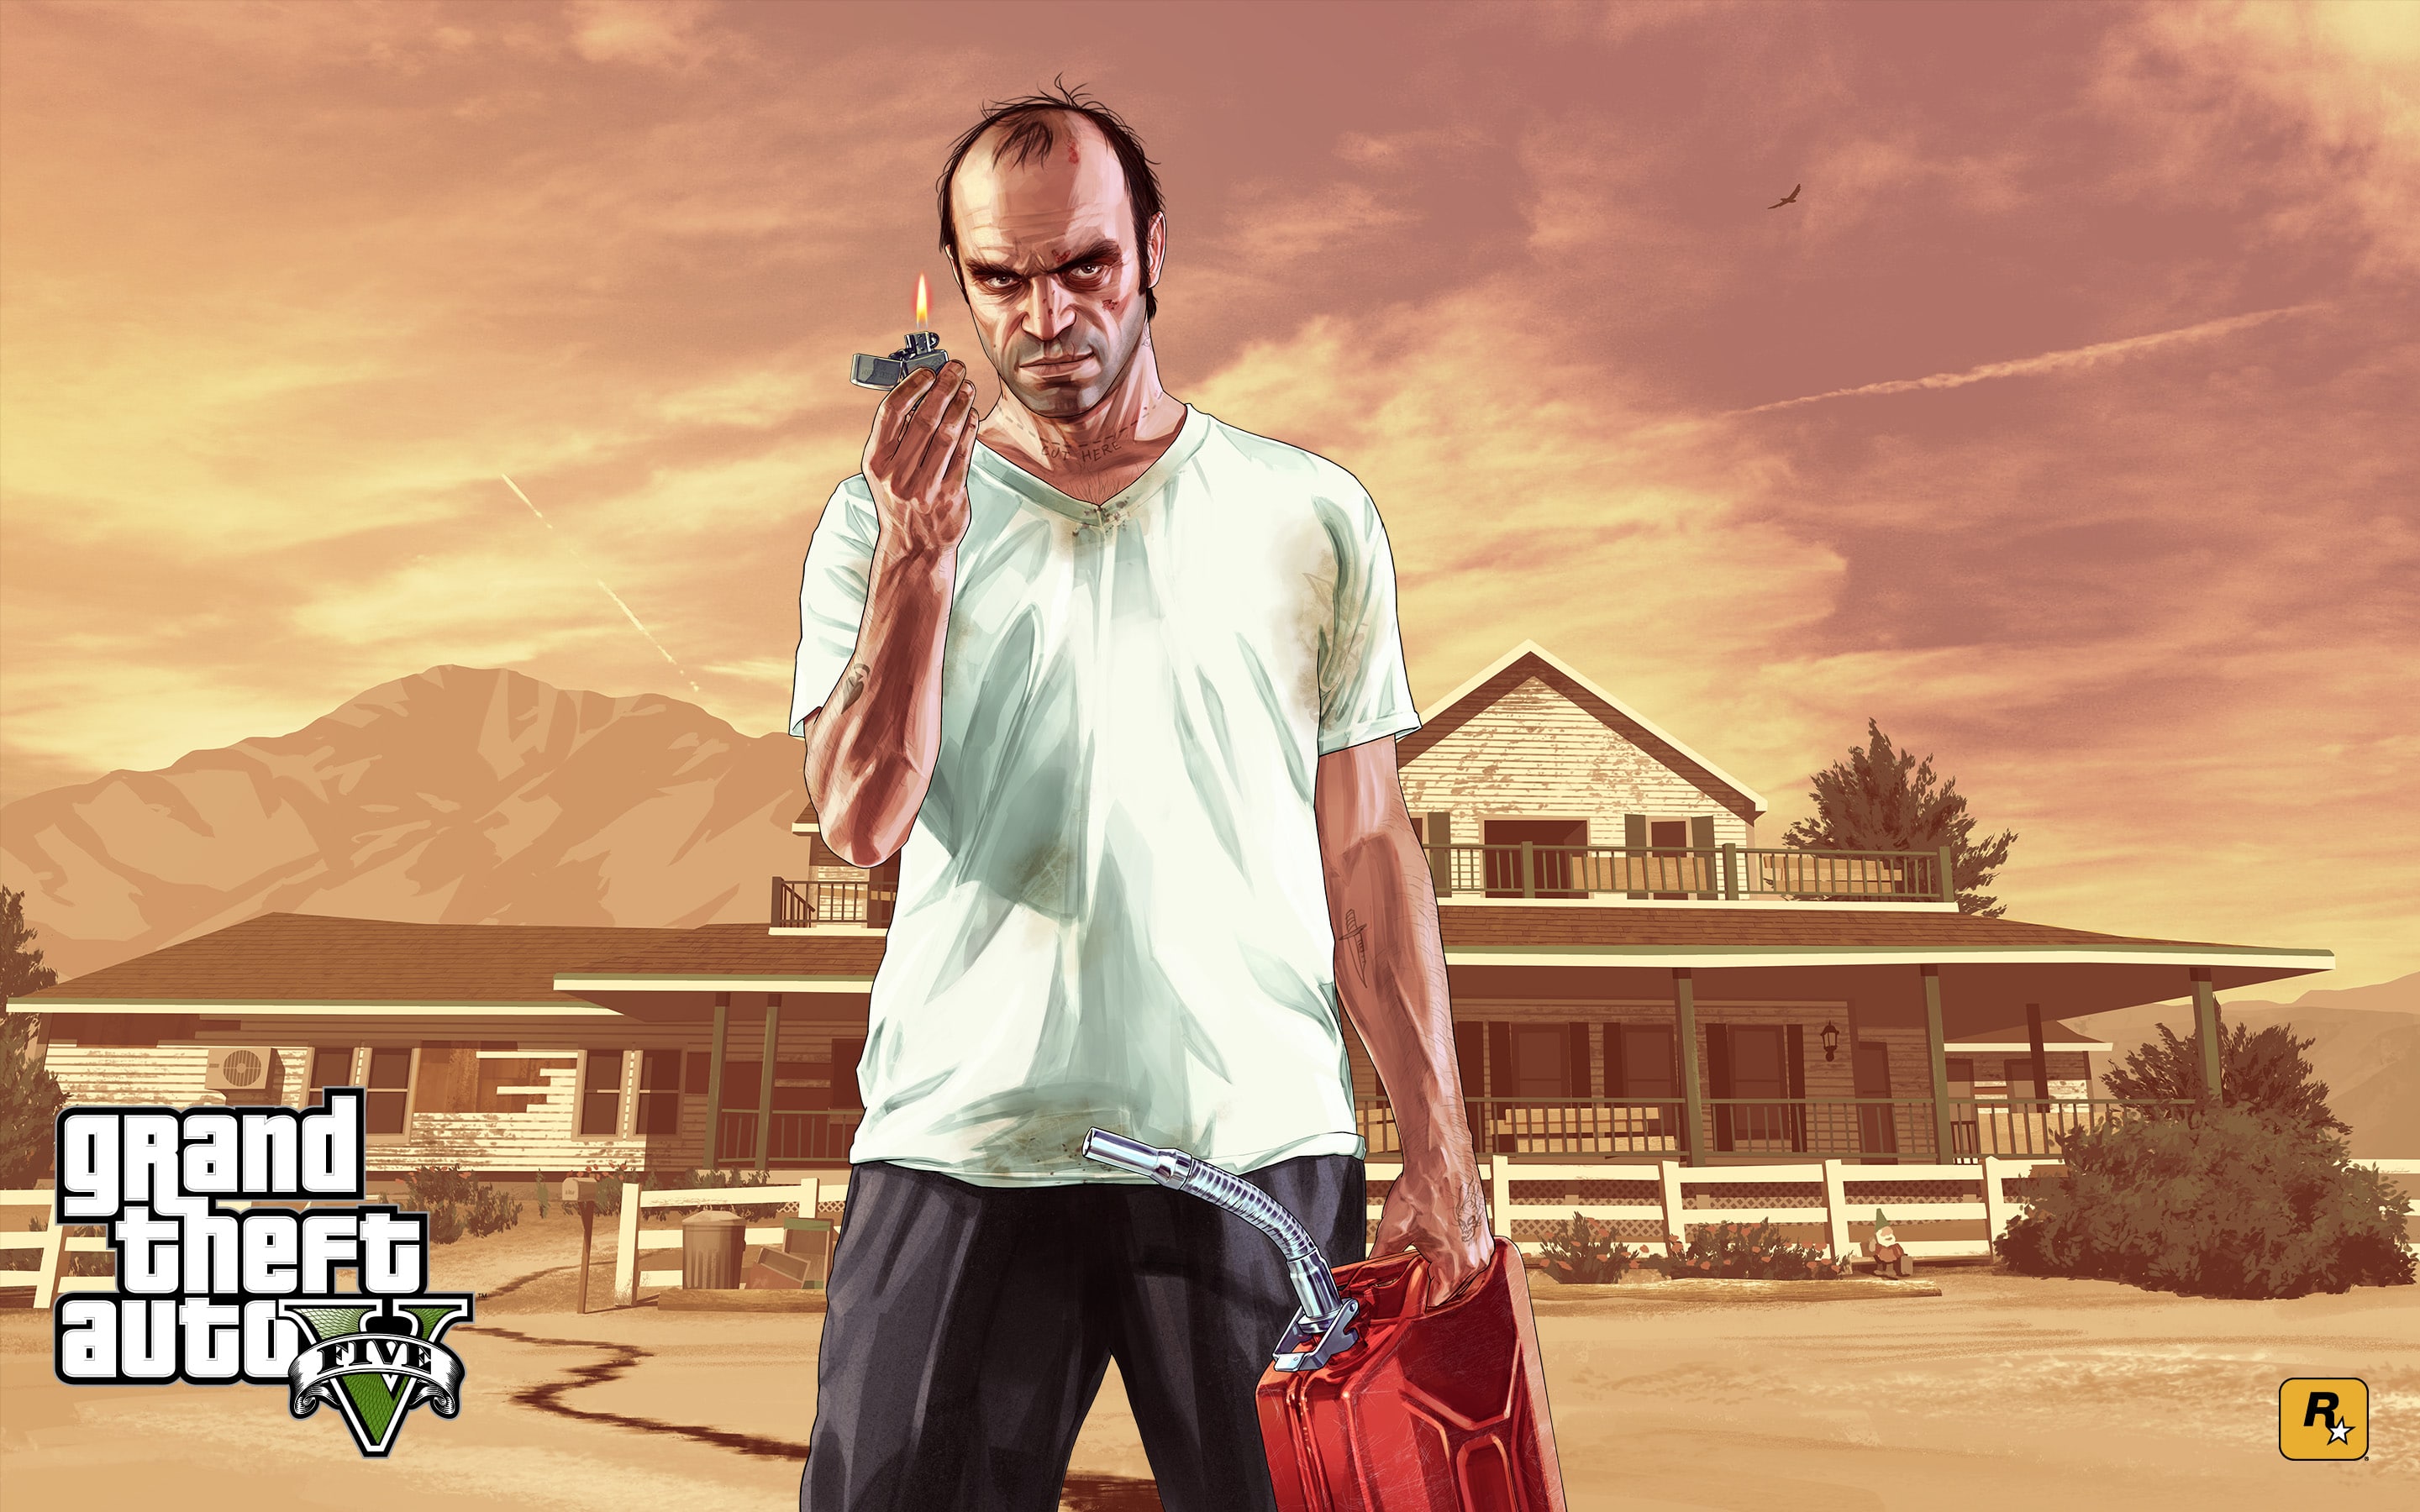 Nuevo personaje de Grand Theft Auto confirmado por el actor de voz